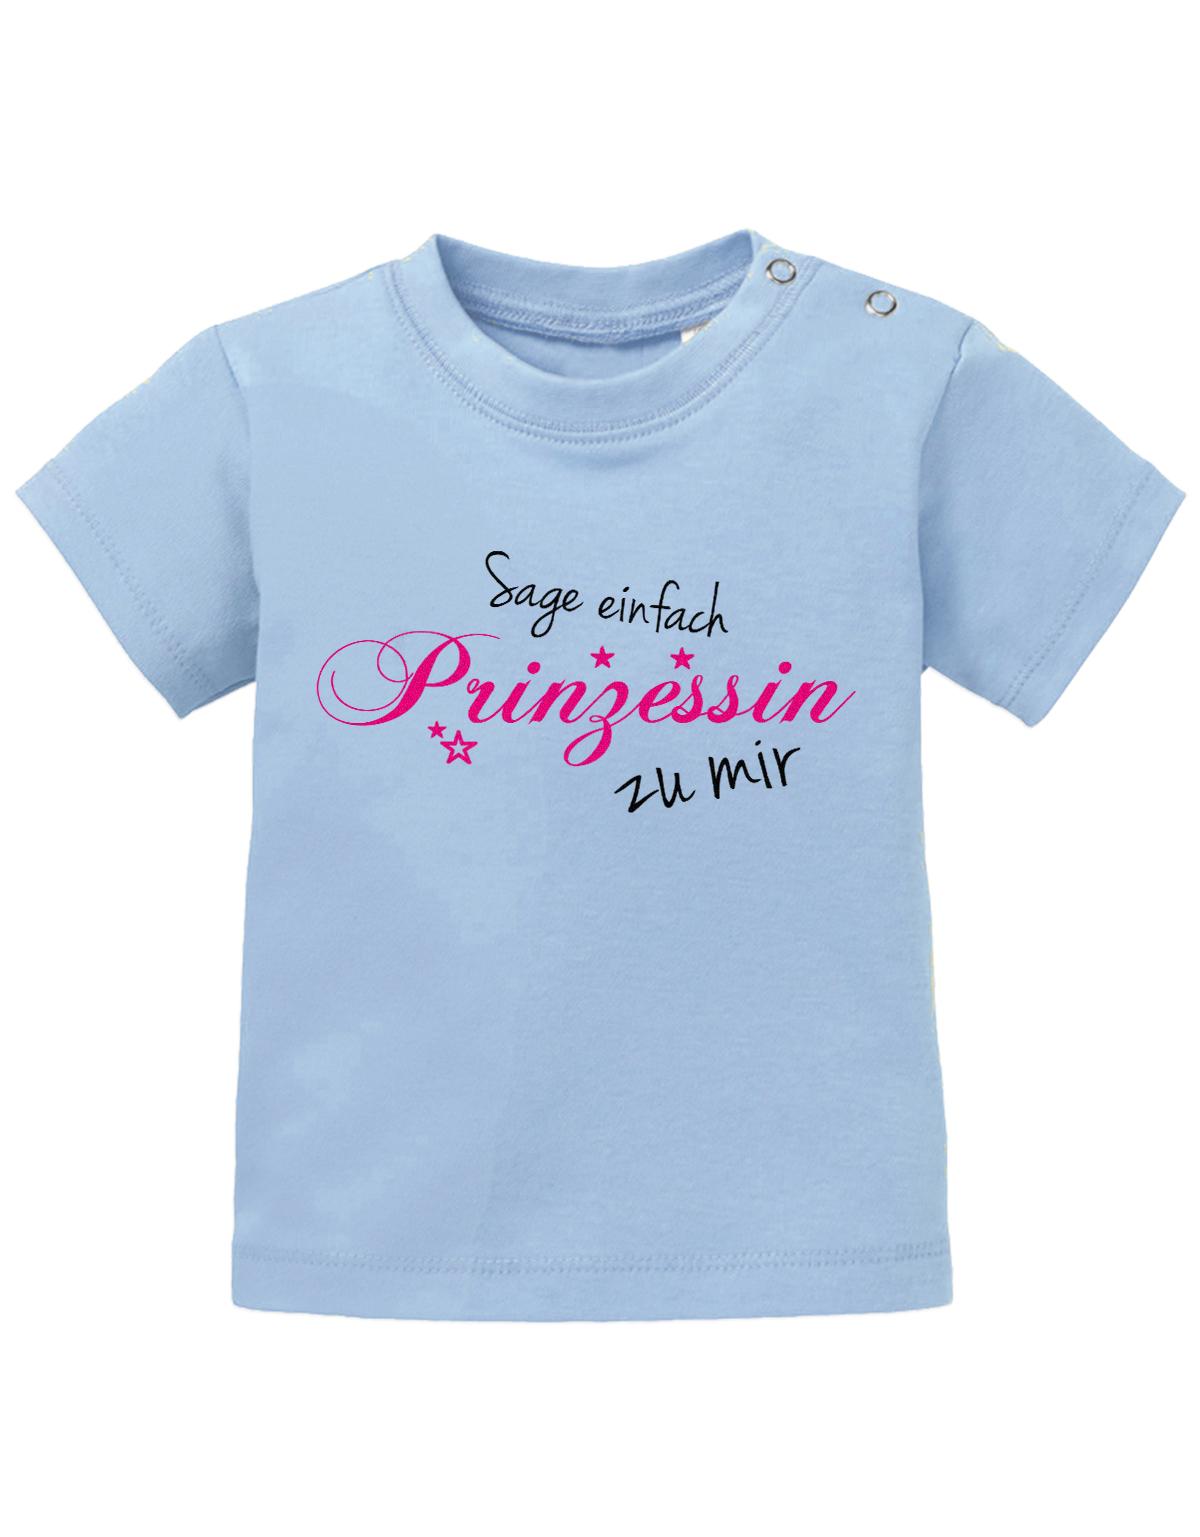 Lustiges Sprüche Baby Shirt Sage einfach Prinzessin zu mir. hellblau